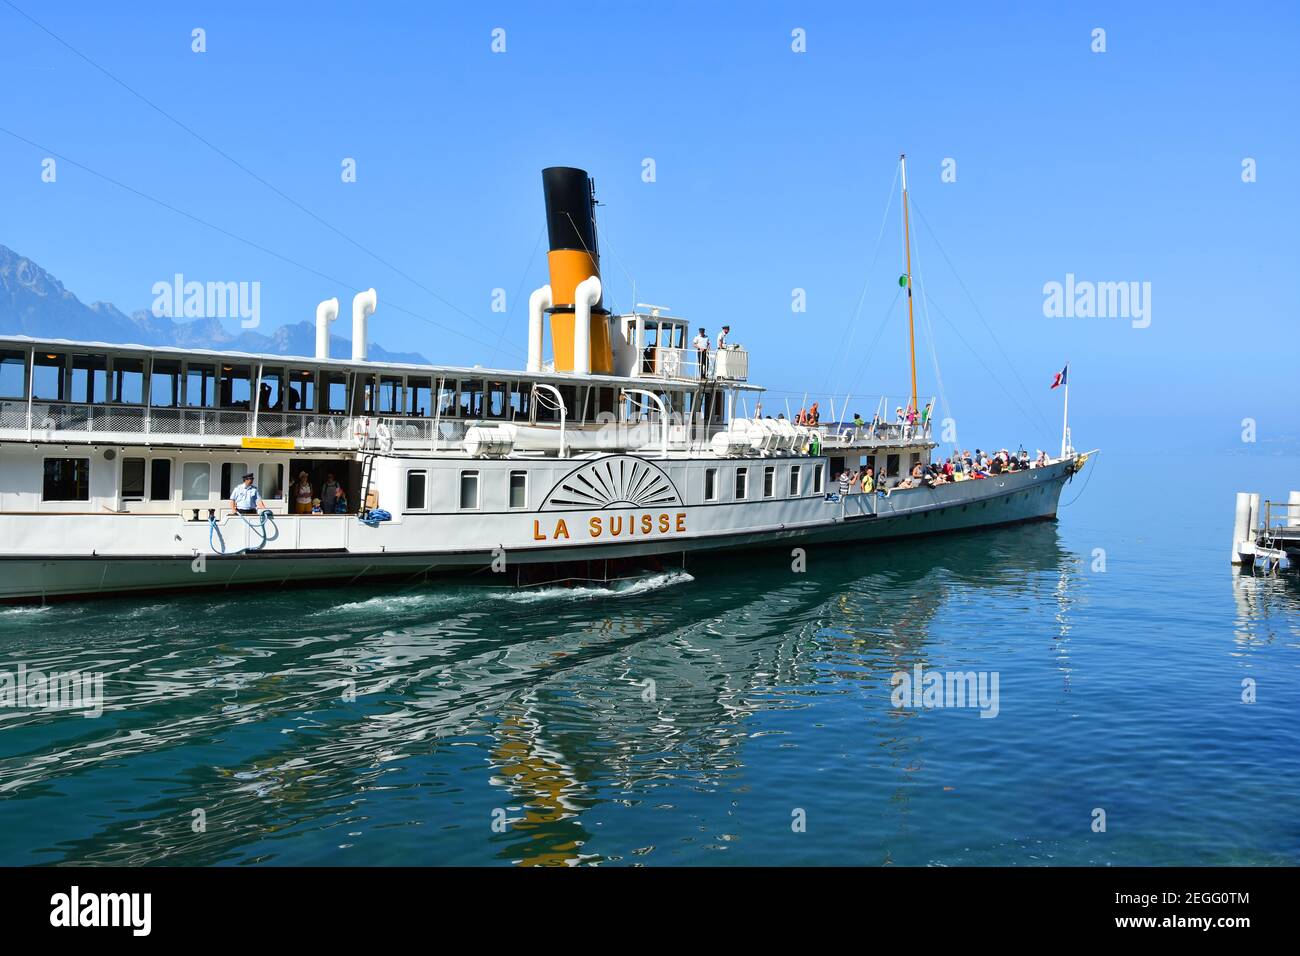 Montreux, Suisse- 24 août 2019. Croisière avec bateau à vapeur à aubes sur le lac Léman (Genève), près de Montreux Riviera, Suisse Banque D'Images